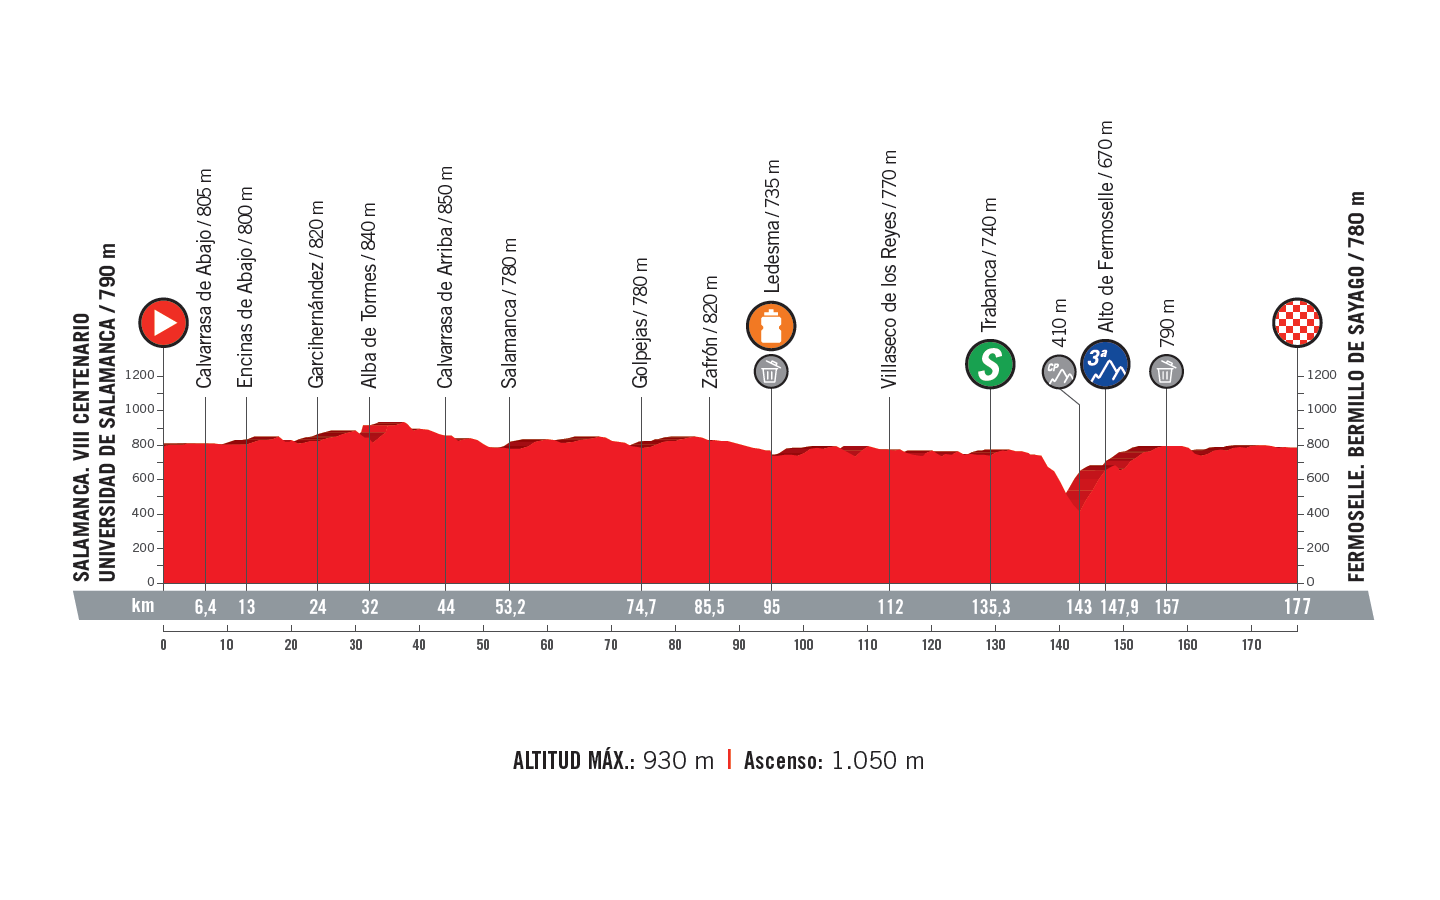 profil 10. etapu Vuelta a Espana 2018